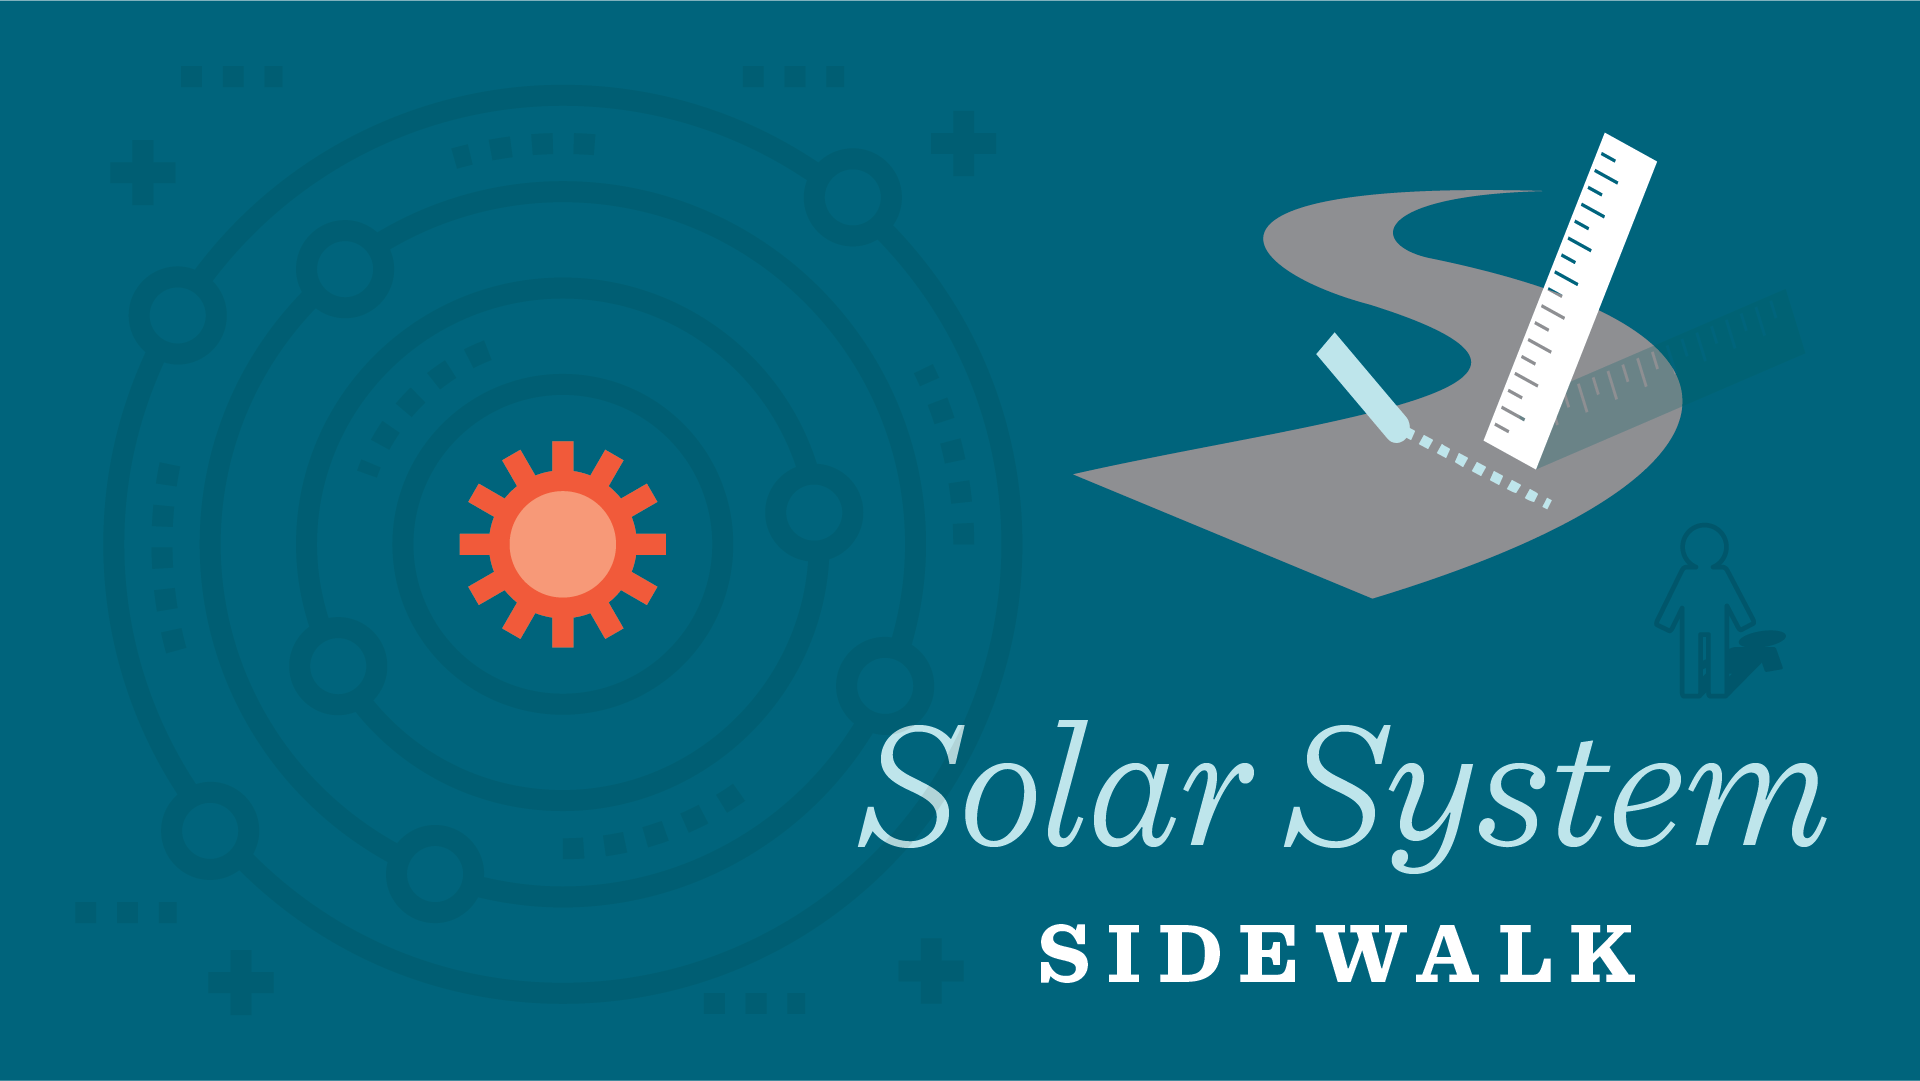 Sidewalk Solar System - Science Recipe Card